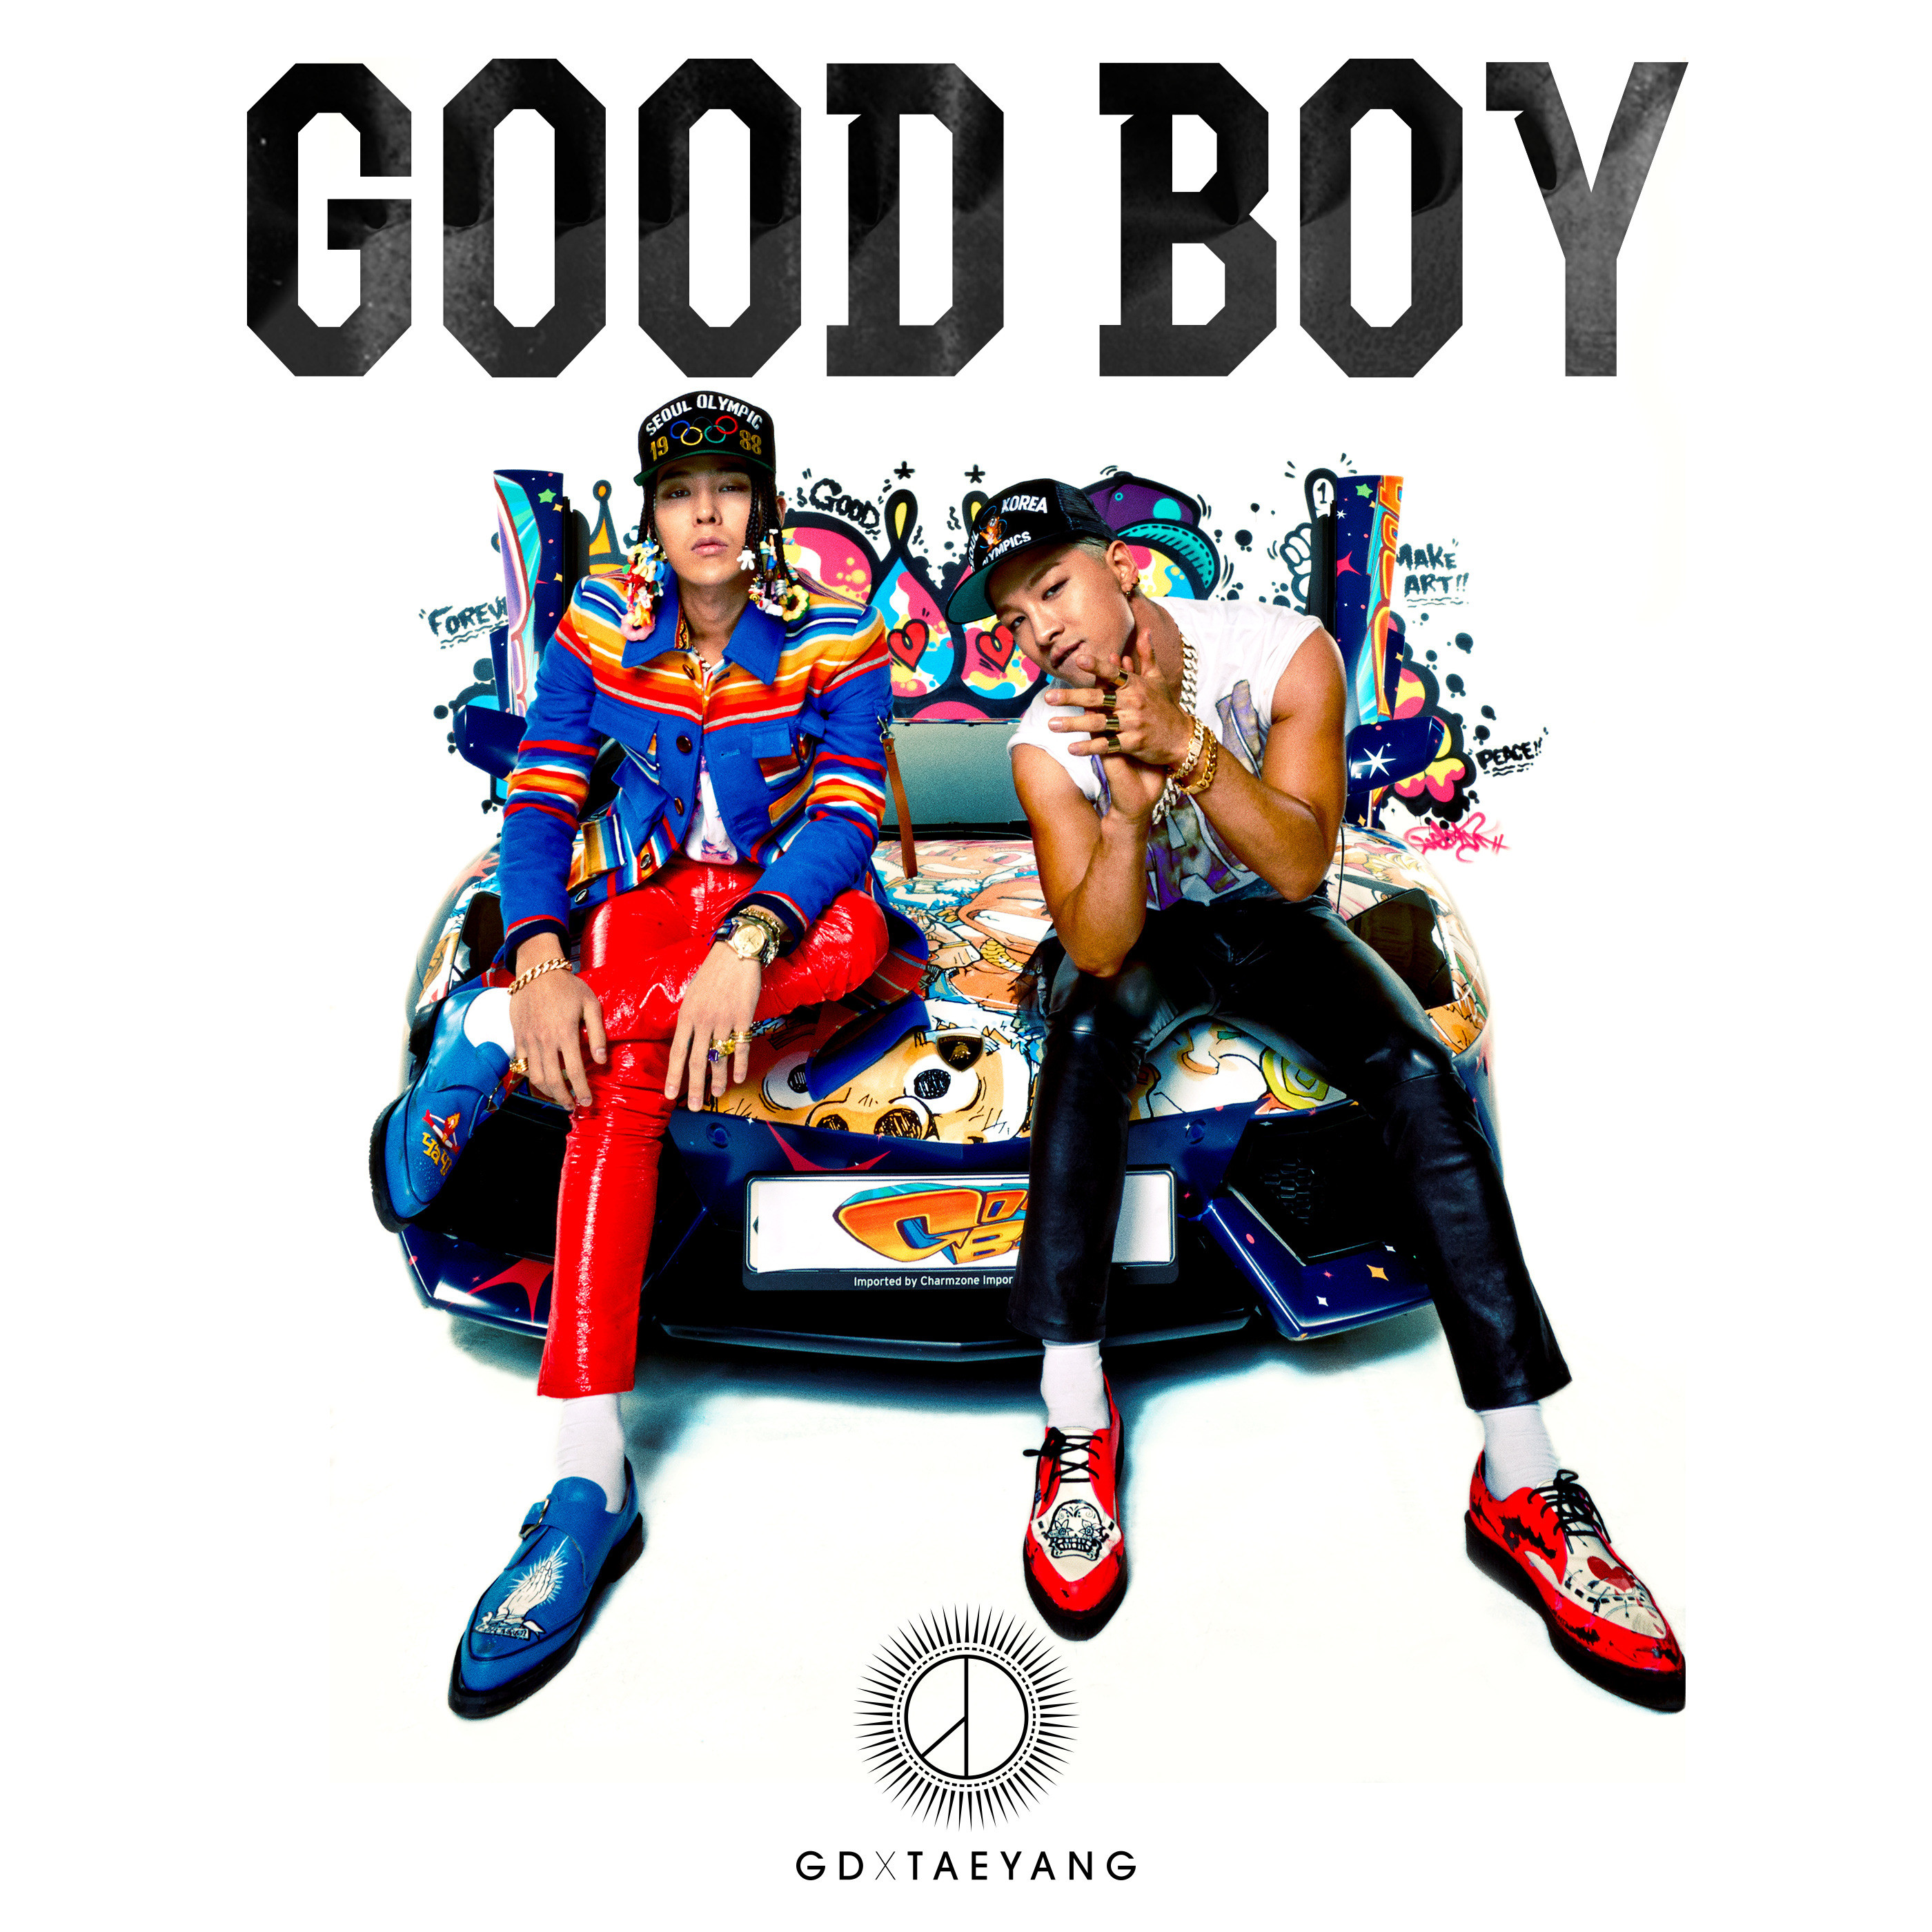 Vcfarua - Good Boy G Dragon X Taeyang - 2800x2800 Wallpaper 